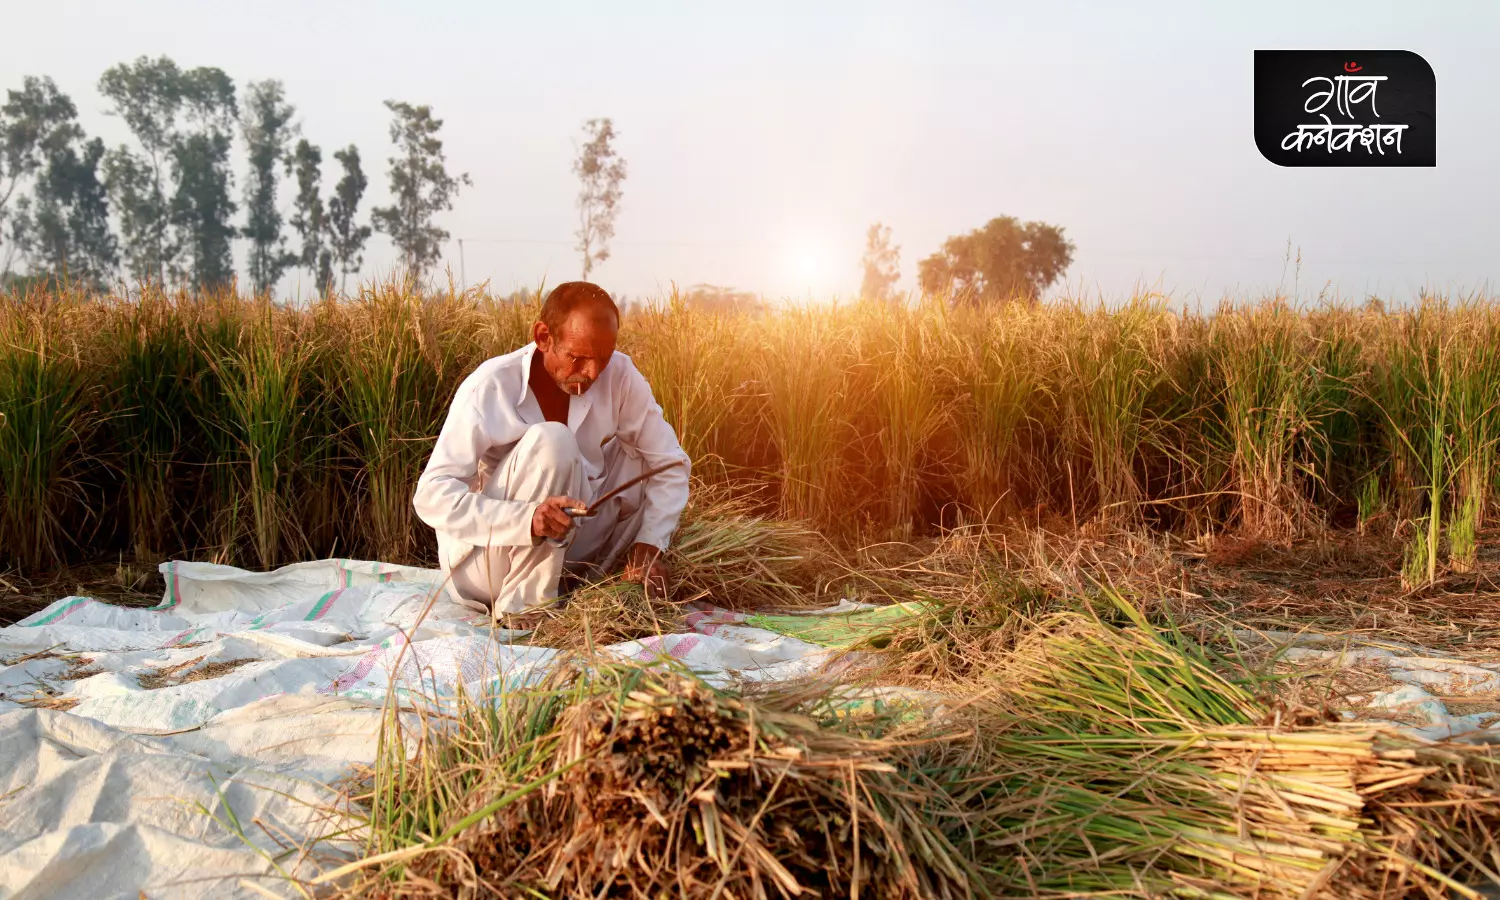 भारतीय कृषि अनुसंधान संस्थान के वैज्ञानिकों ने शुरू की किसान संपर्क यात्रा, किसानों से जानेंगे उनके अनुभव